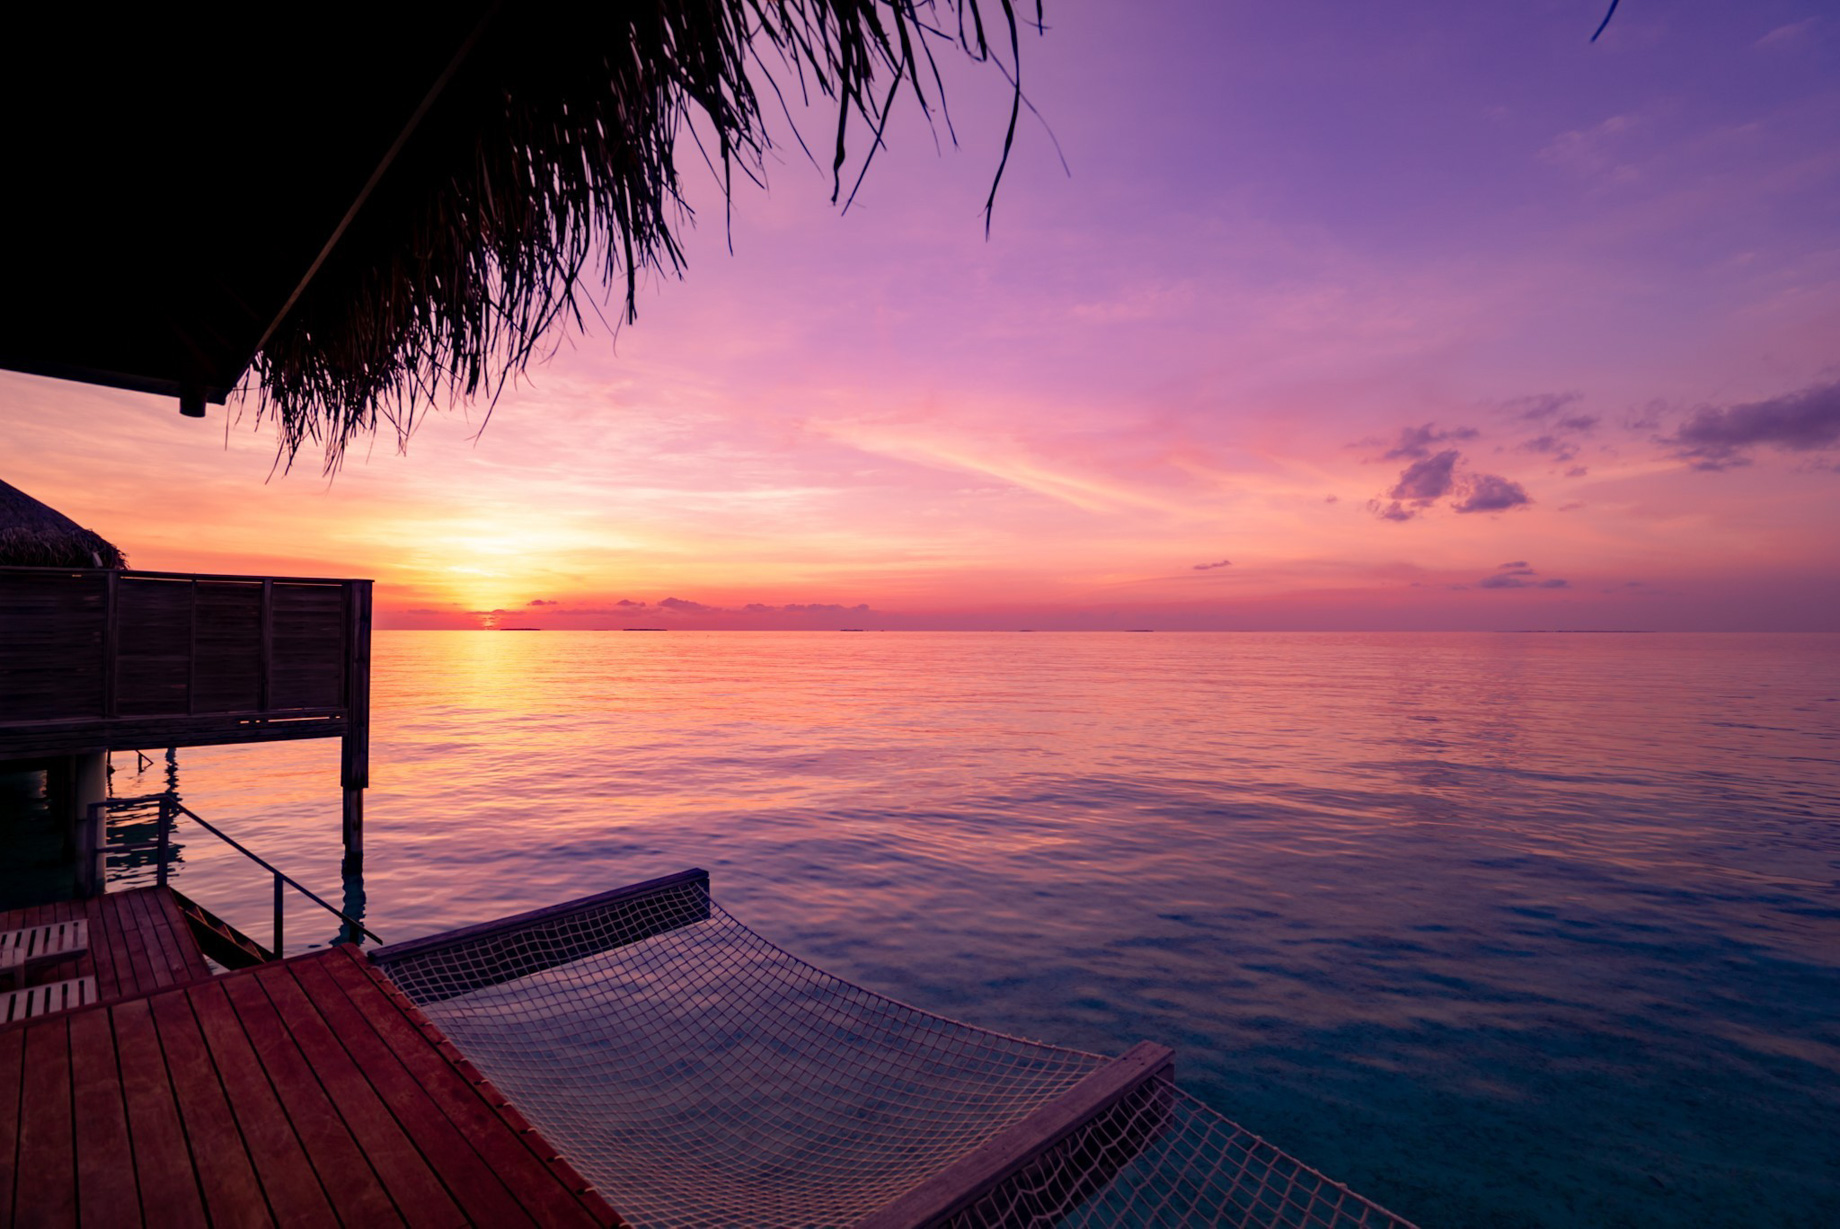 Anantara Kihavah Maldives Villas Resort - Baa Atoll, Maldives - Ocean View Sunset